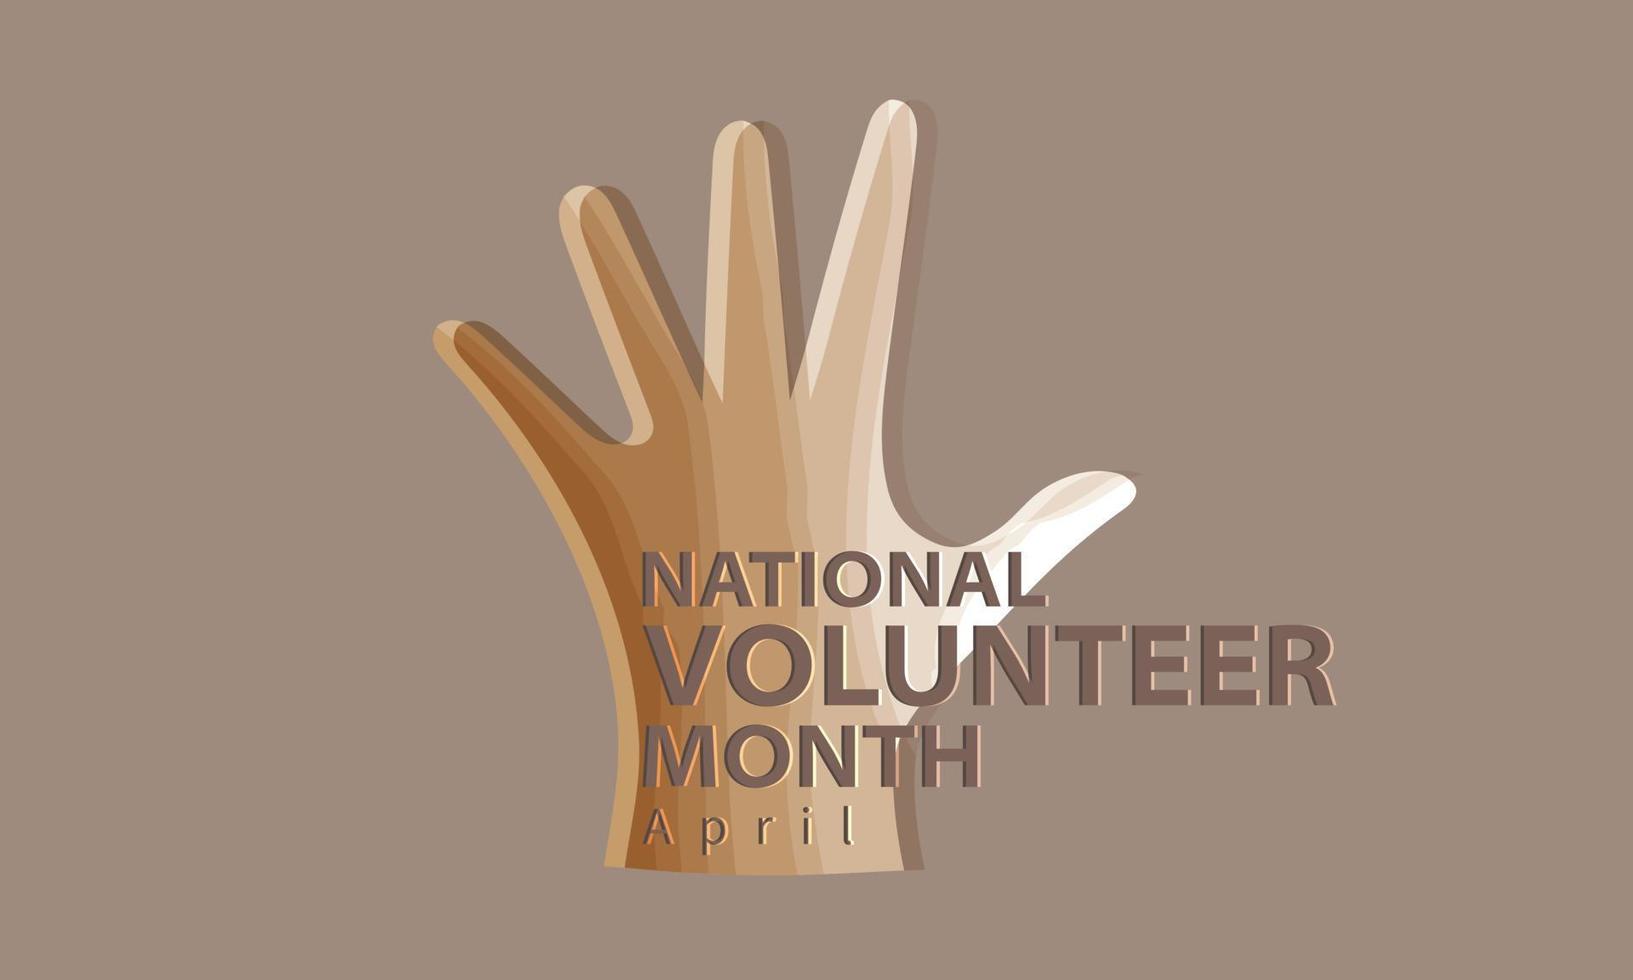 April ist National Freiwillige Monat. Vorlage zum Hintergrund, Banner, Karte, Poster vektor